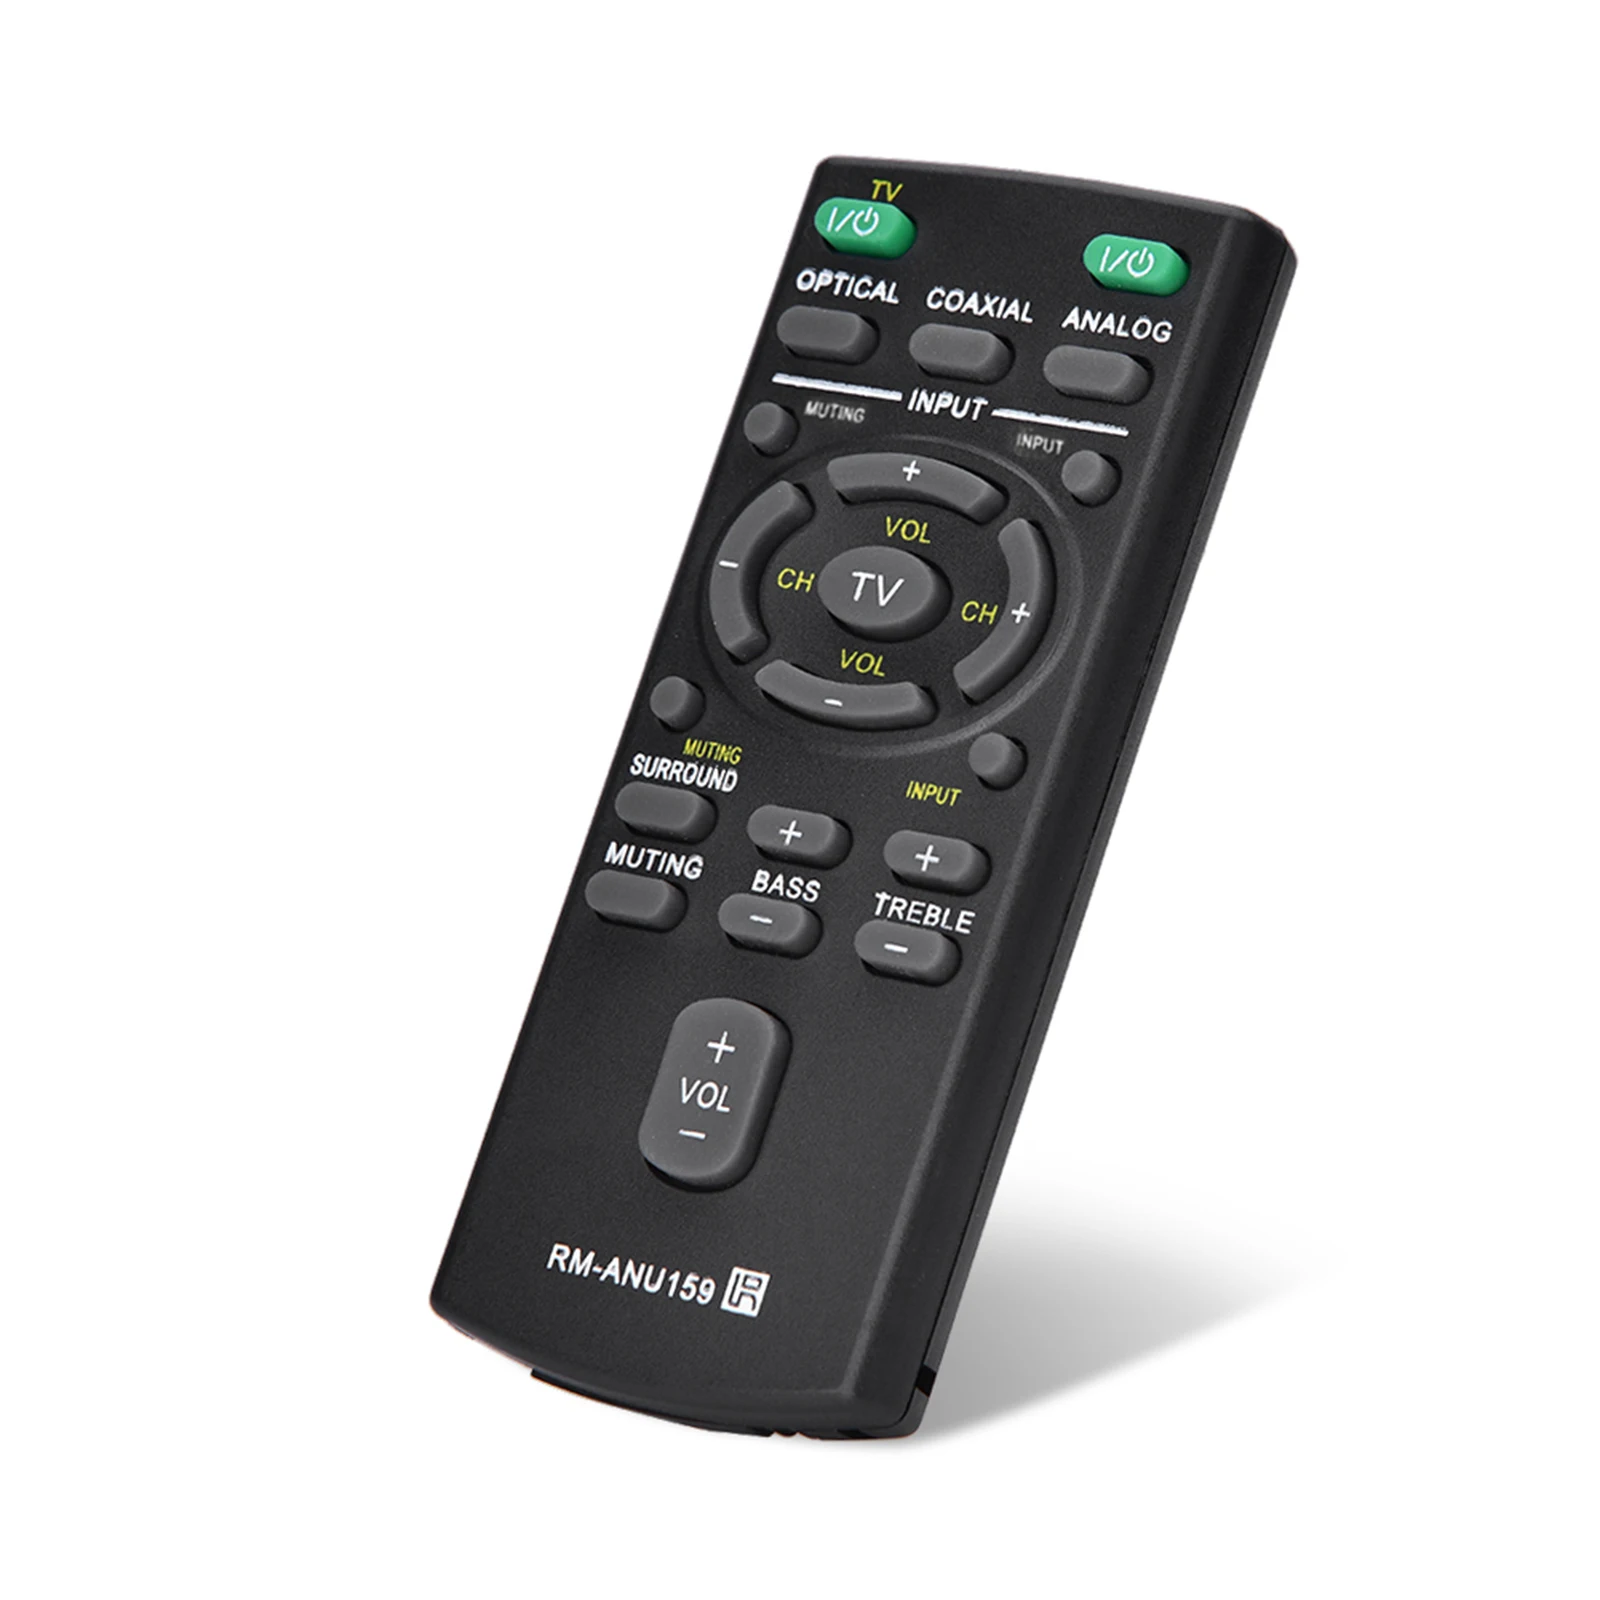 Fjernbetjening, Tastatur Universal Fjernbetjening Udskiftning RM-ANU159 Fjernbetjening Til Sony Bar Remote Controllere 2